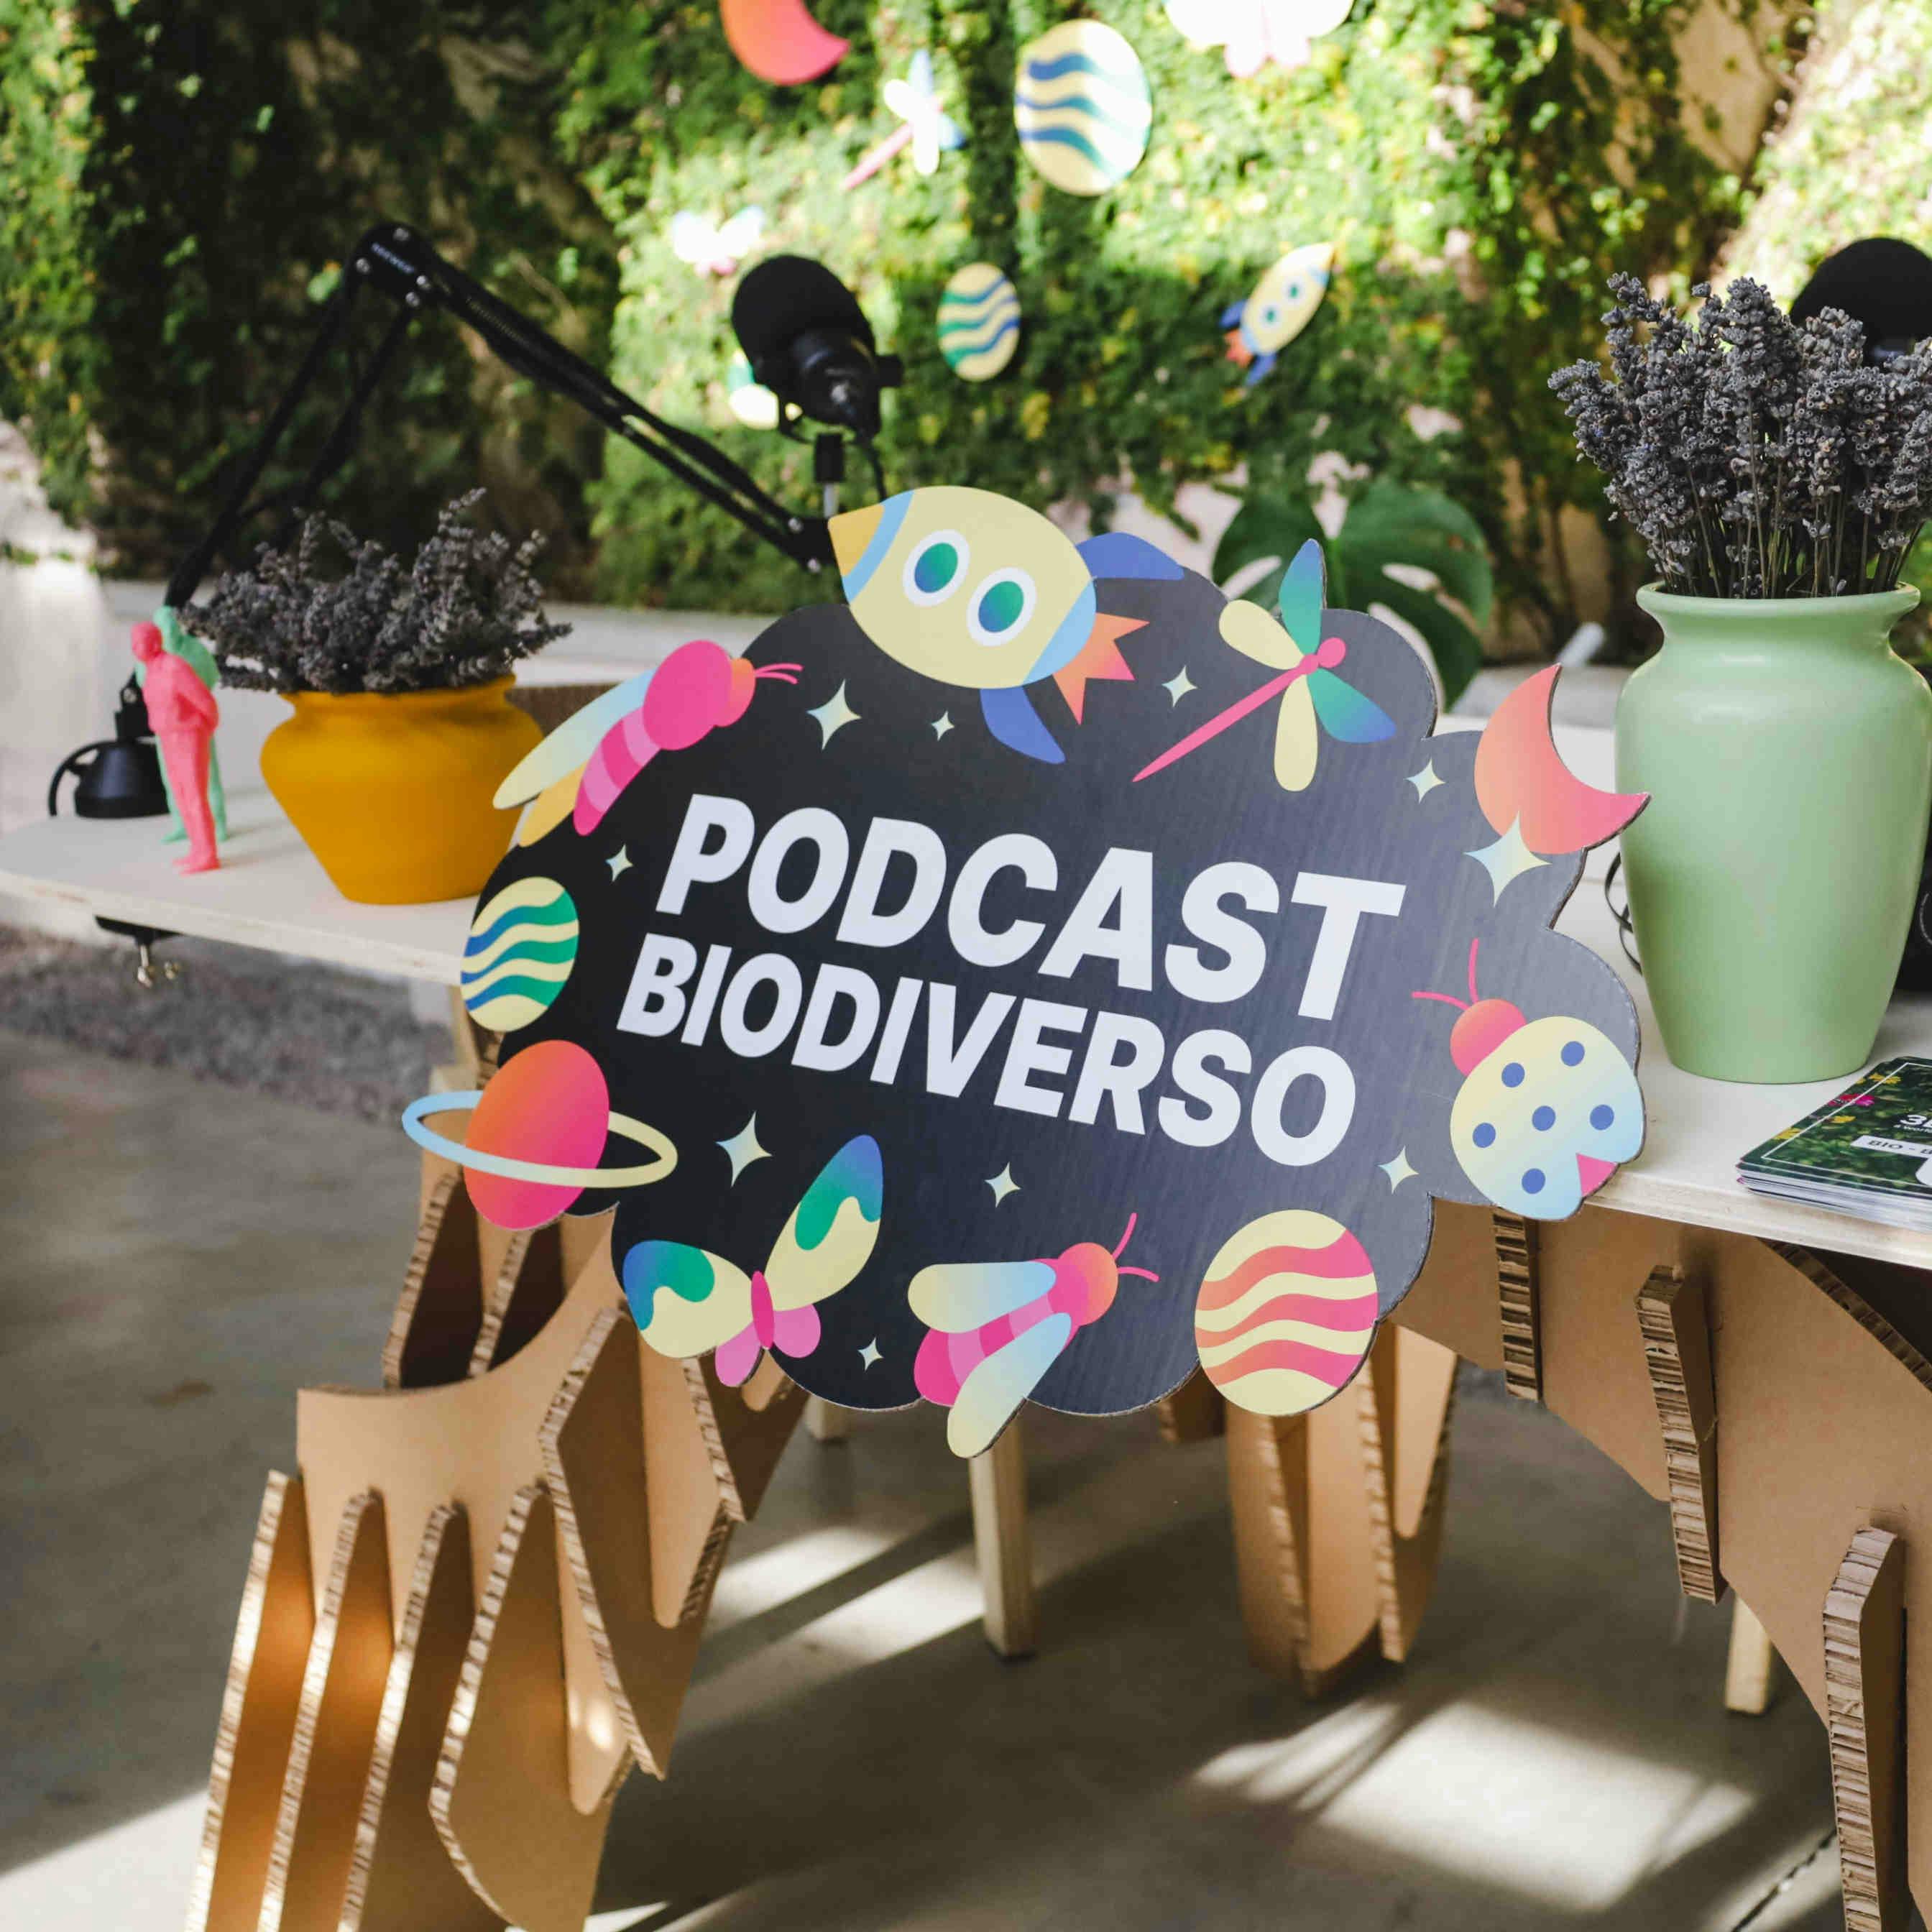 Podcast sur la biodiversité : épisodes et invités